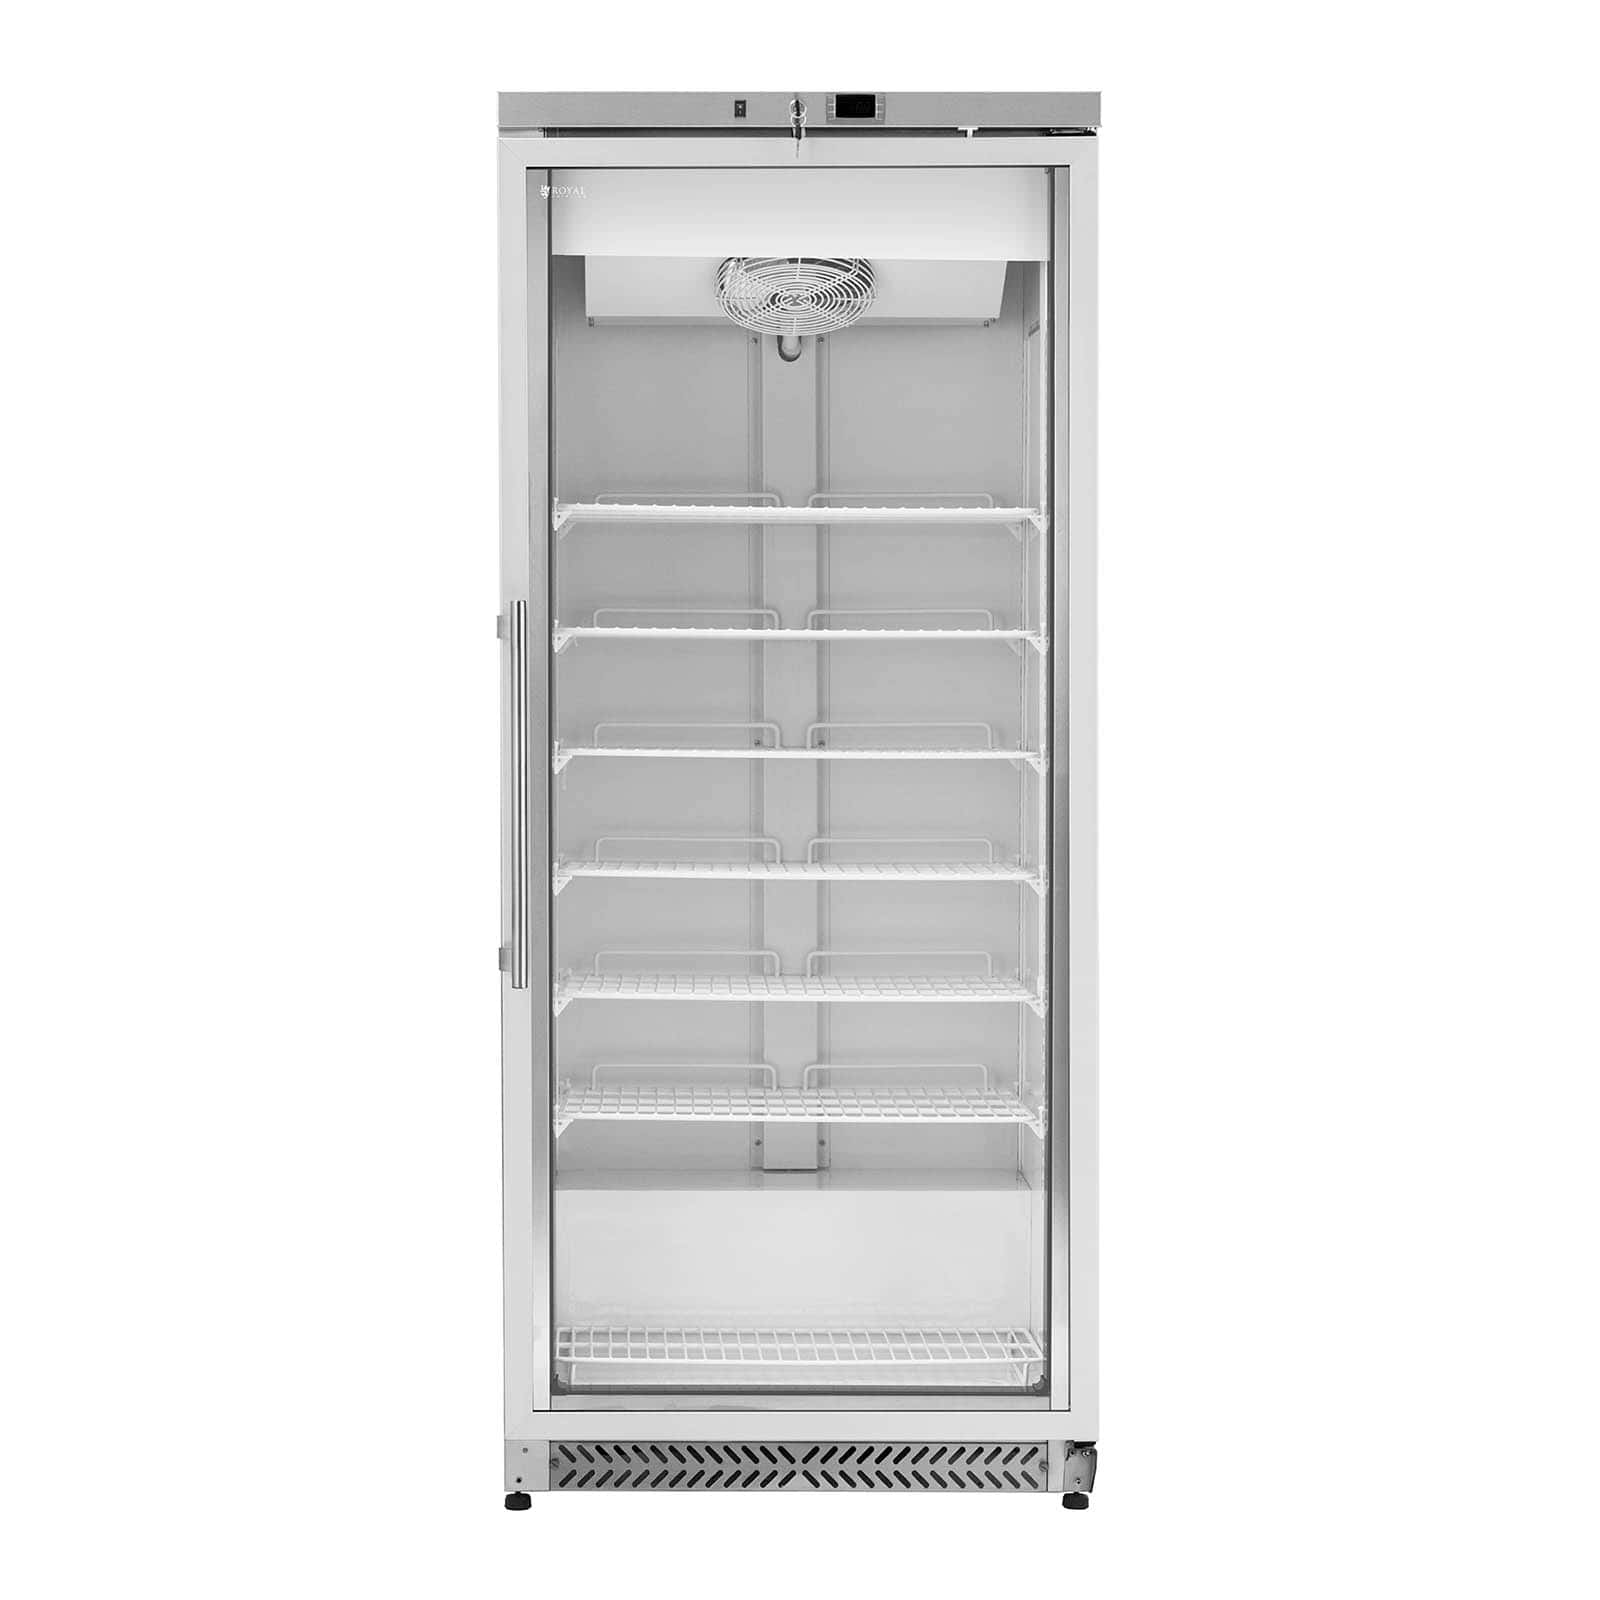 Grand congélateur armoire vertical grande capacité réfrigérant R290 (volume  : 380 litres, puissance : 425 watts, porte à double vitrage)